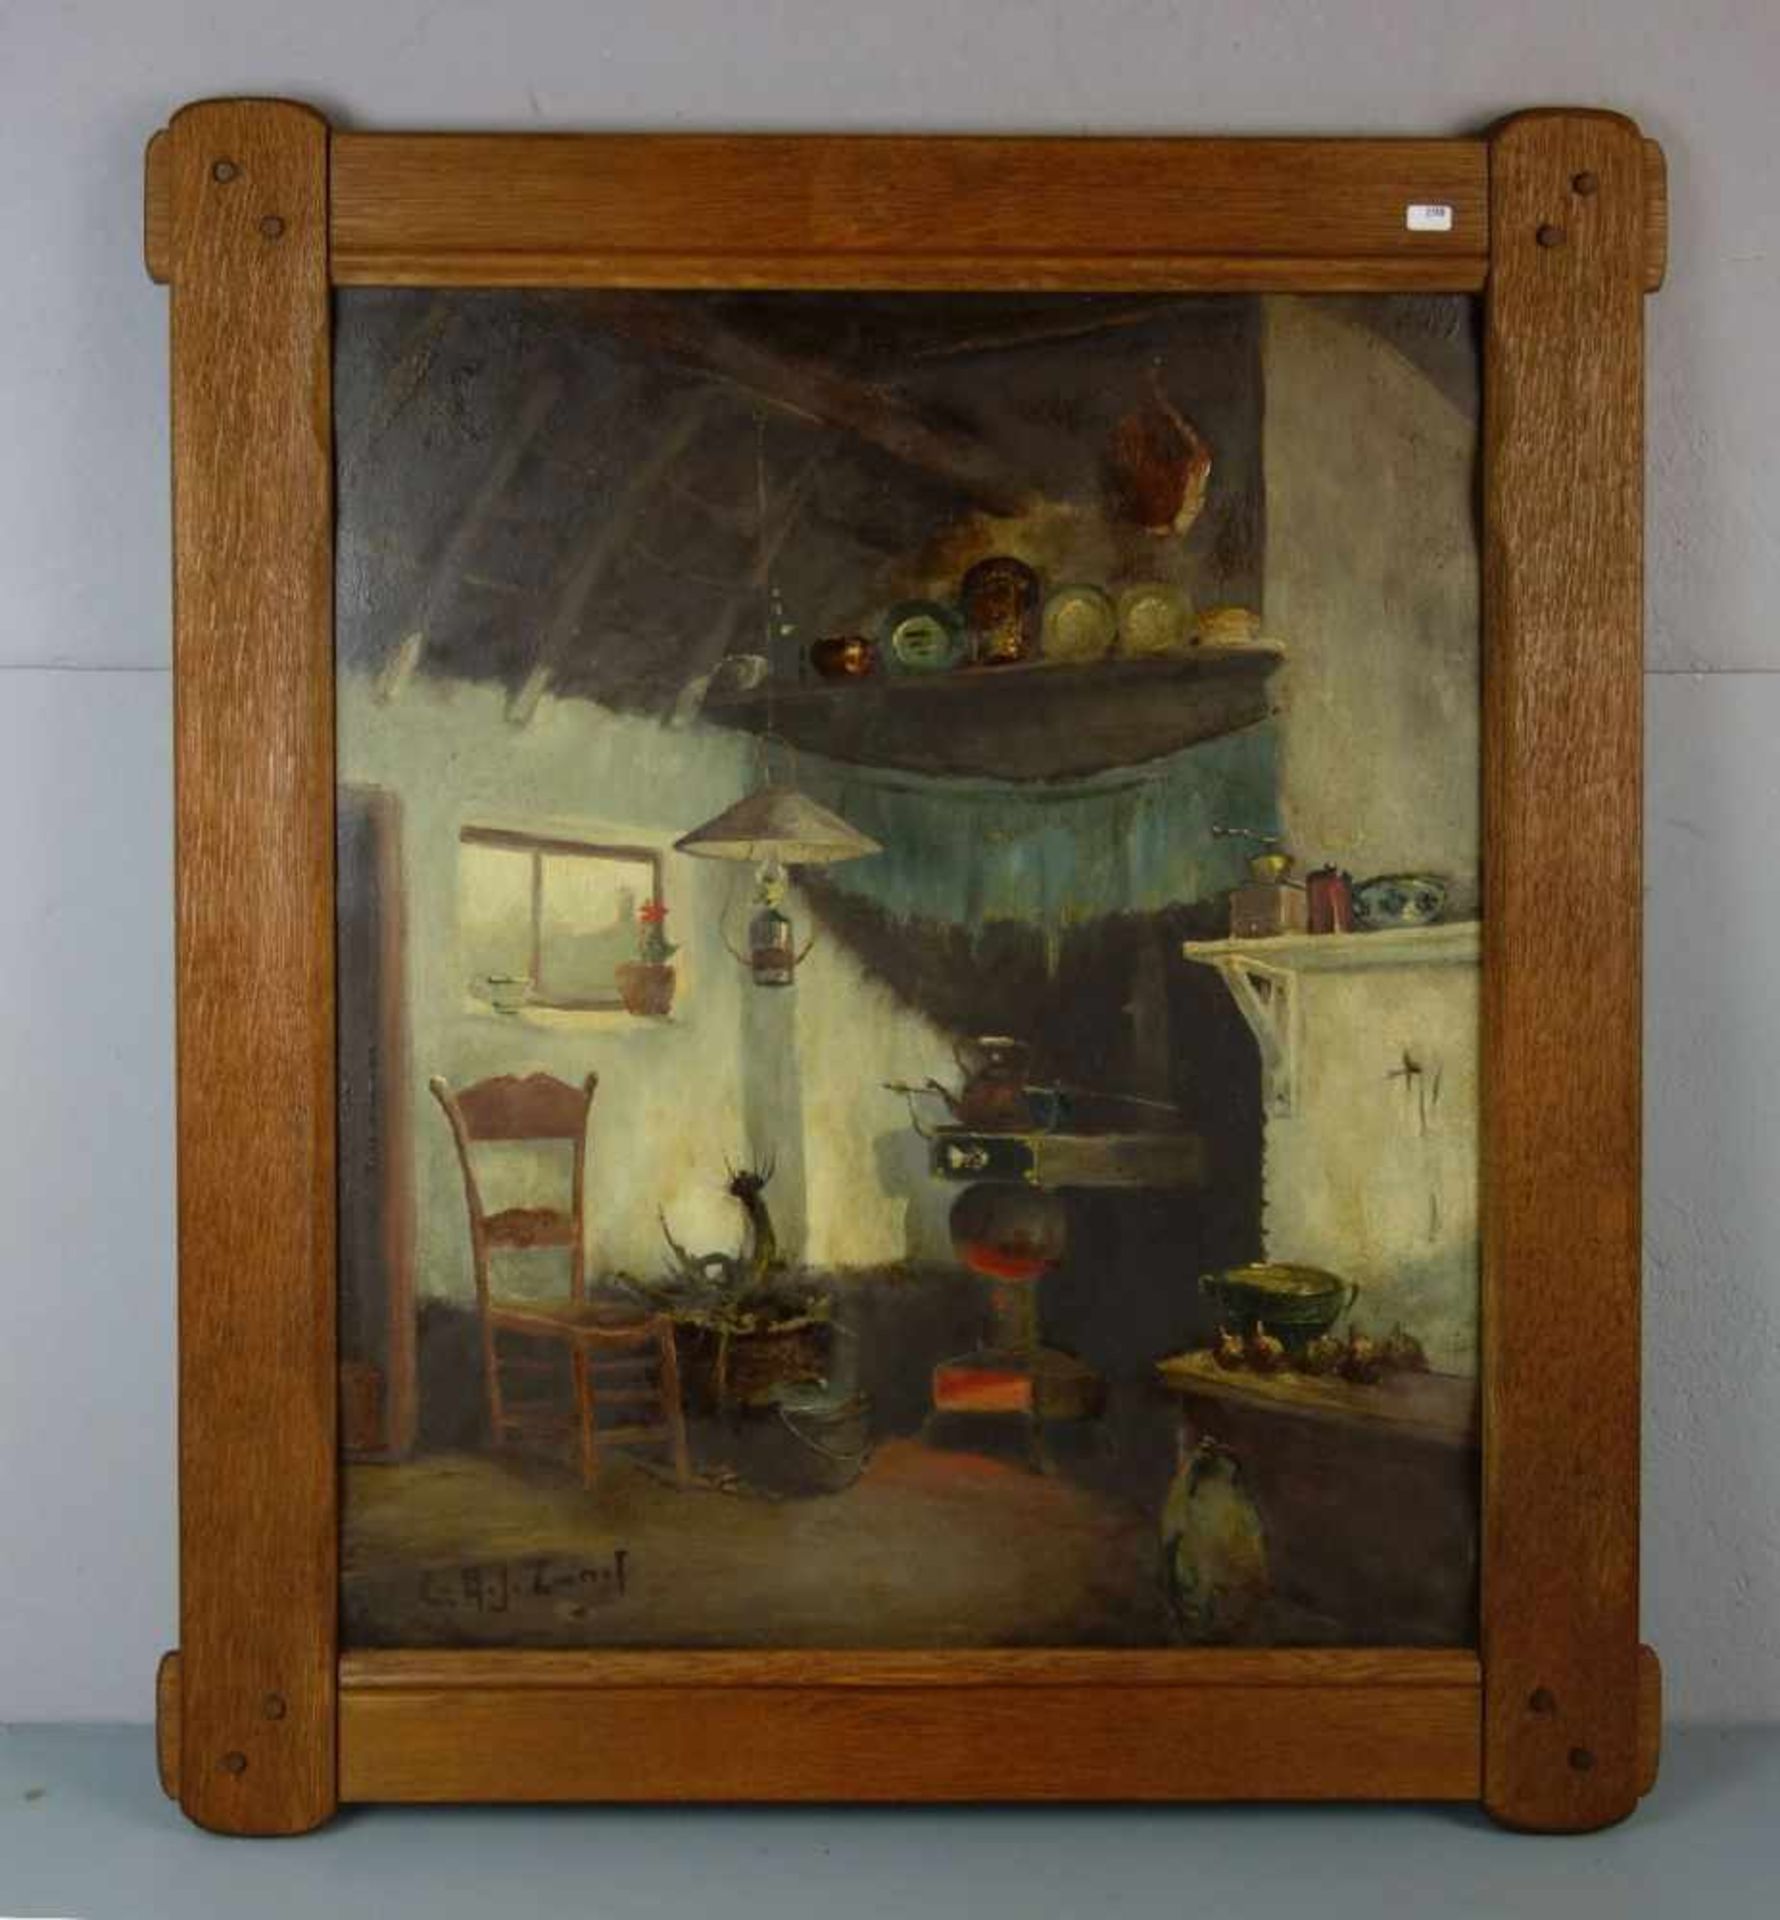 ZWART, ARIE (Adrianus Johannes Zwart, Rijswijk 1903-1981 Laren), Gemälde / painting: "Interieur", Öl